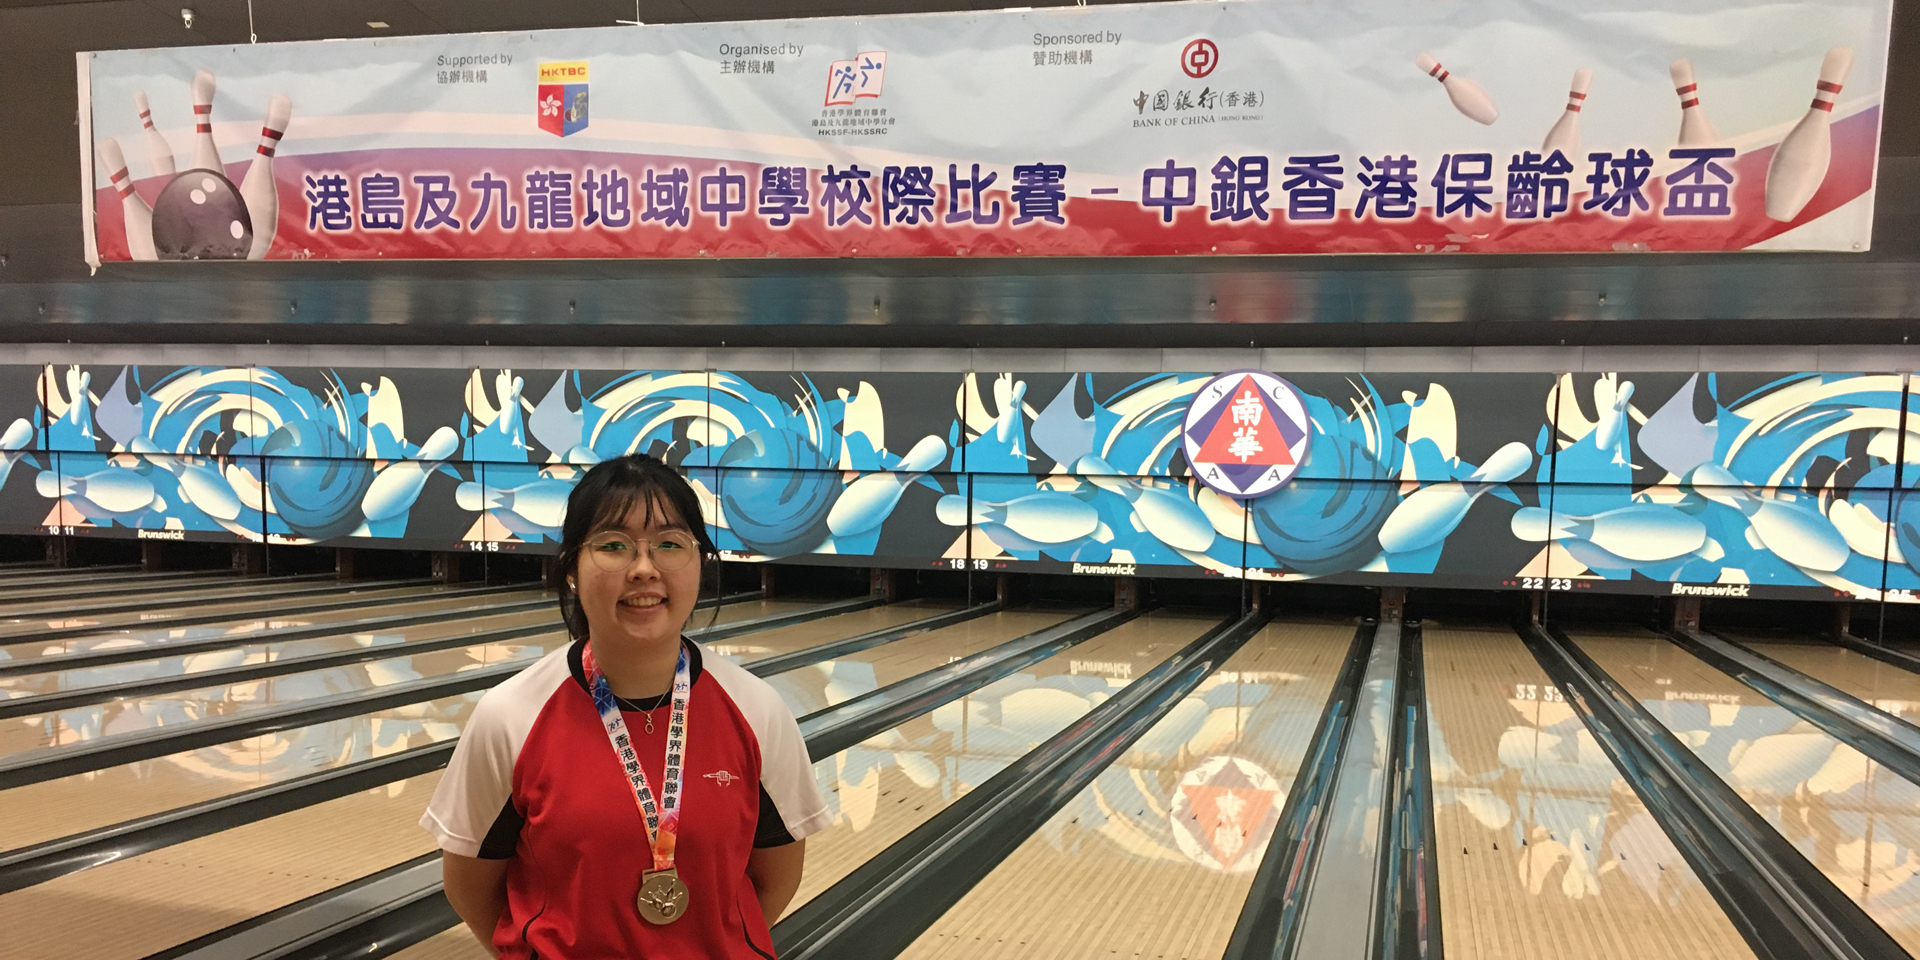 陳加敏同學獲得「中銀香港保齡球盃」女子組亞軍